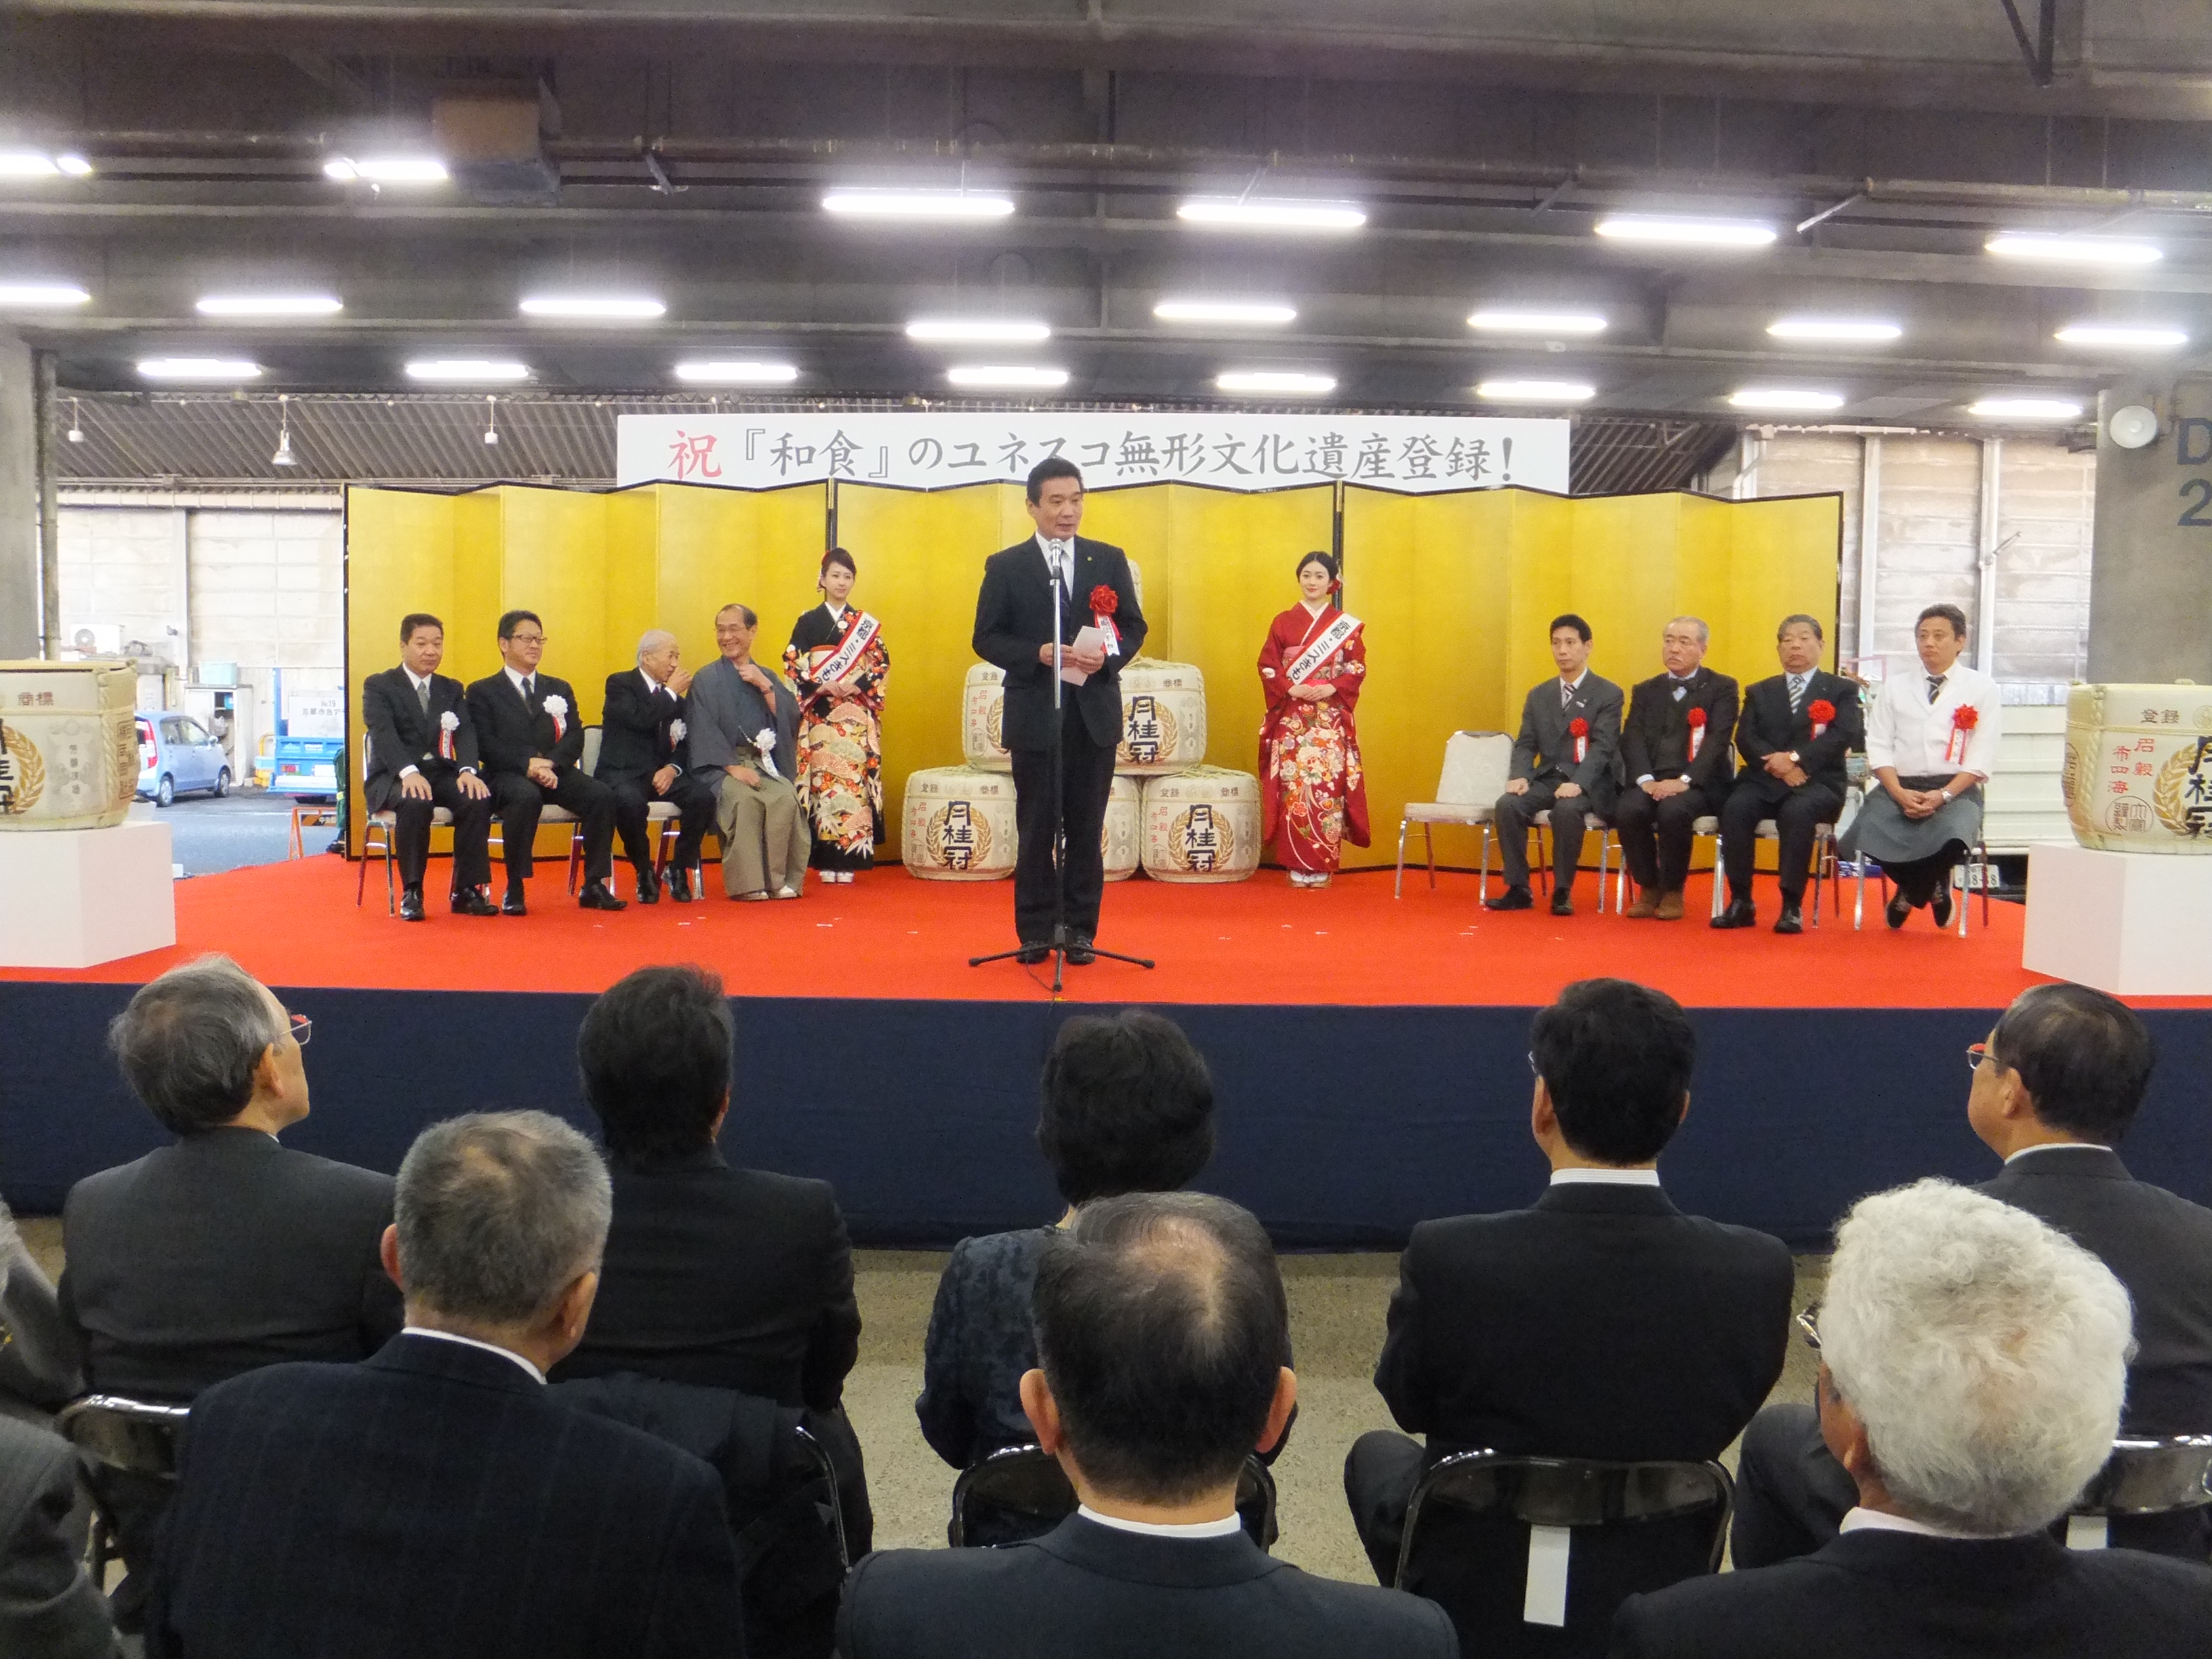 京都市中央卸売市場第一市場 「和食」のユネスコ無形文化遺産登録祝賀イベントオープニングセレモニー